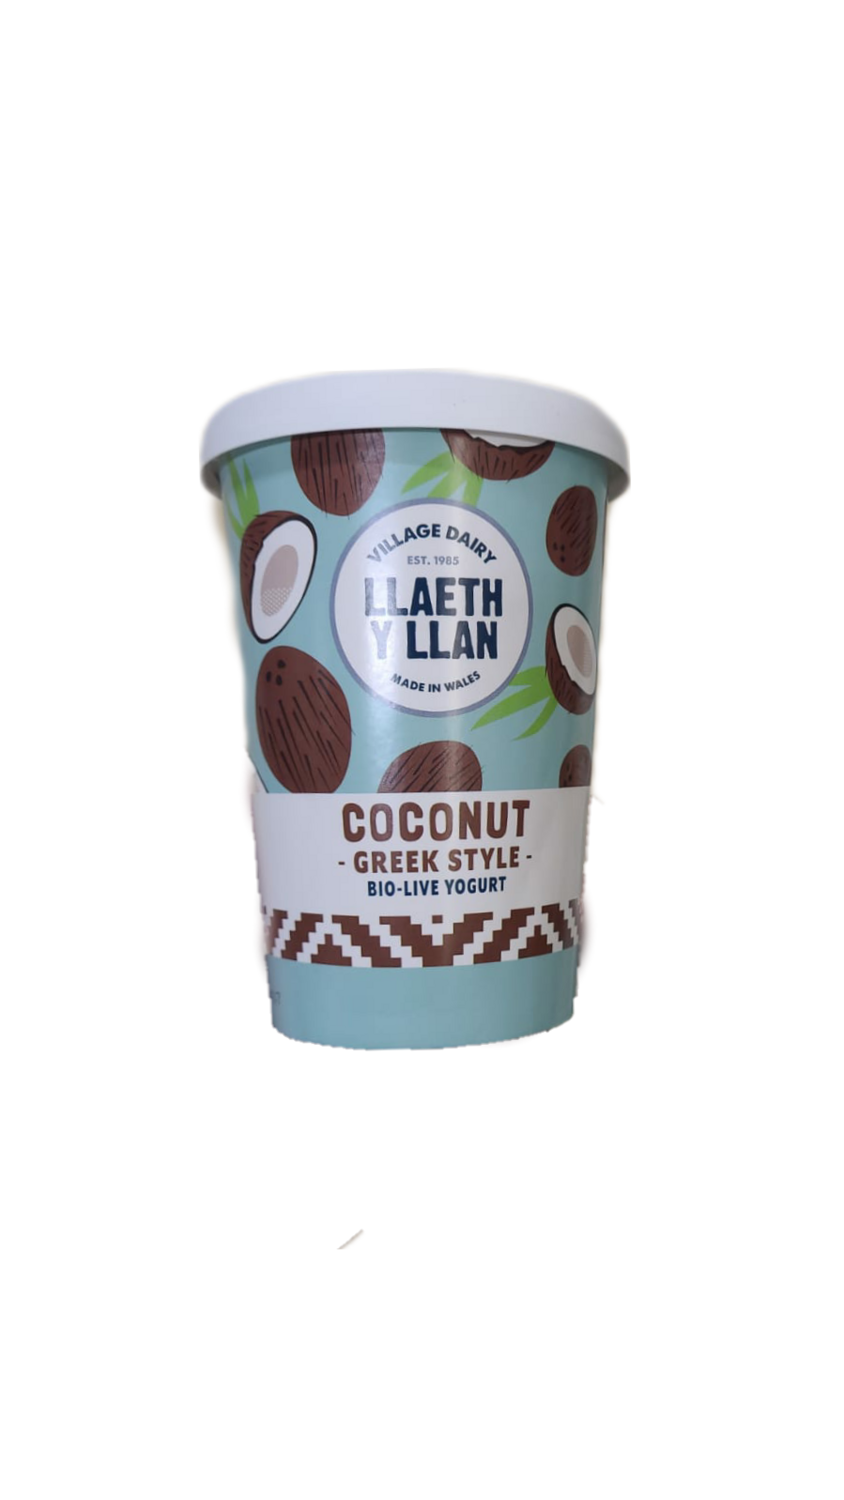 Llaeth Y Llan Coconut Greek Style 450g